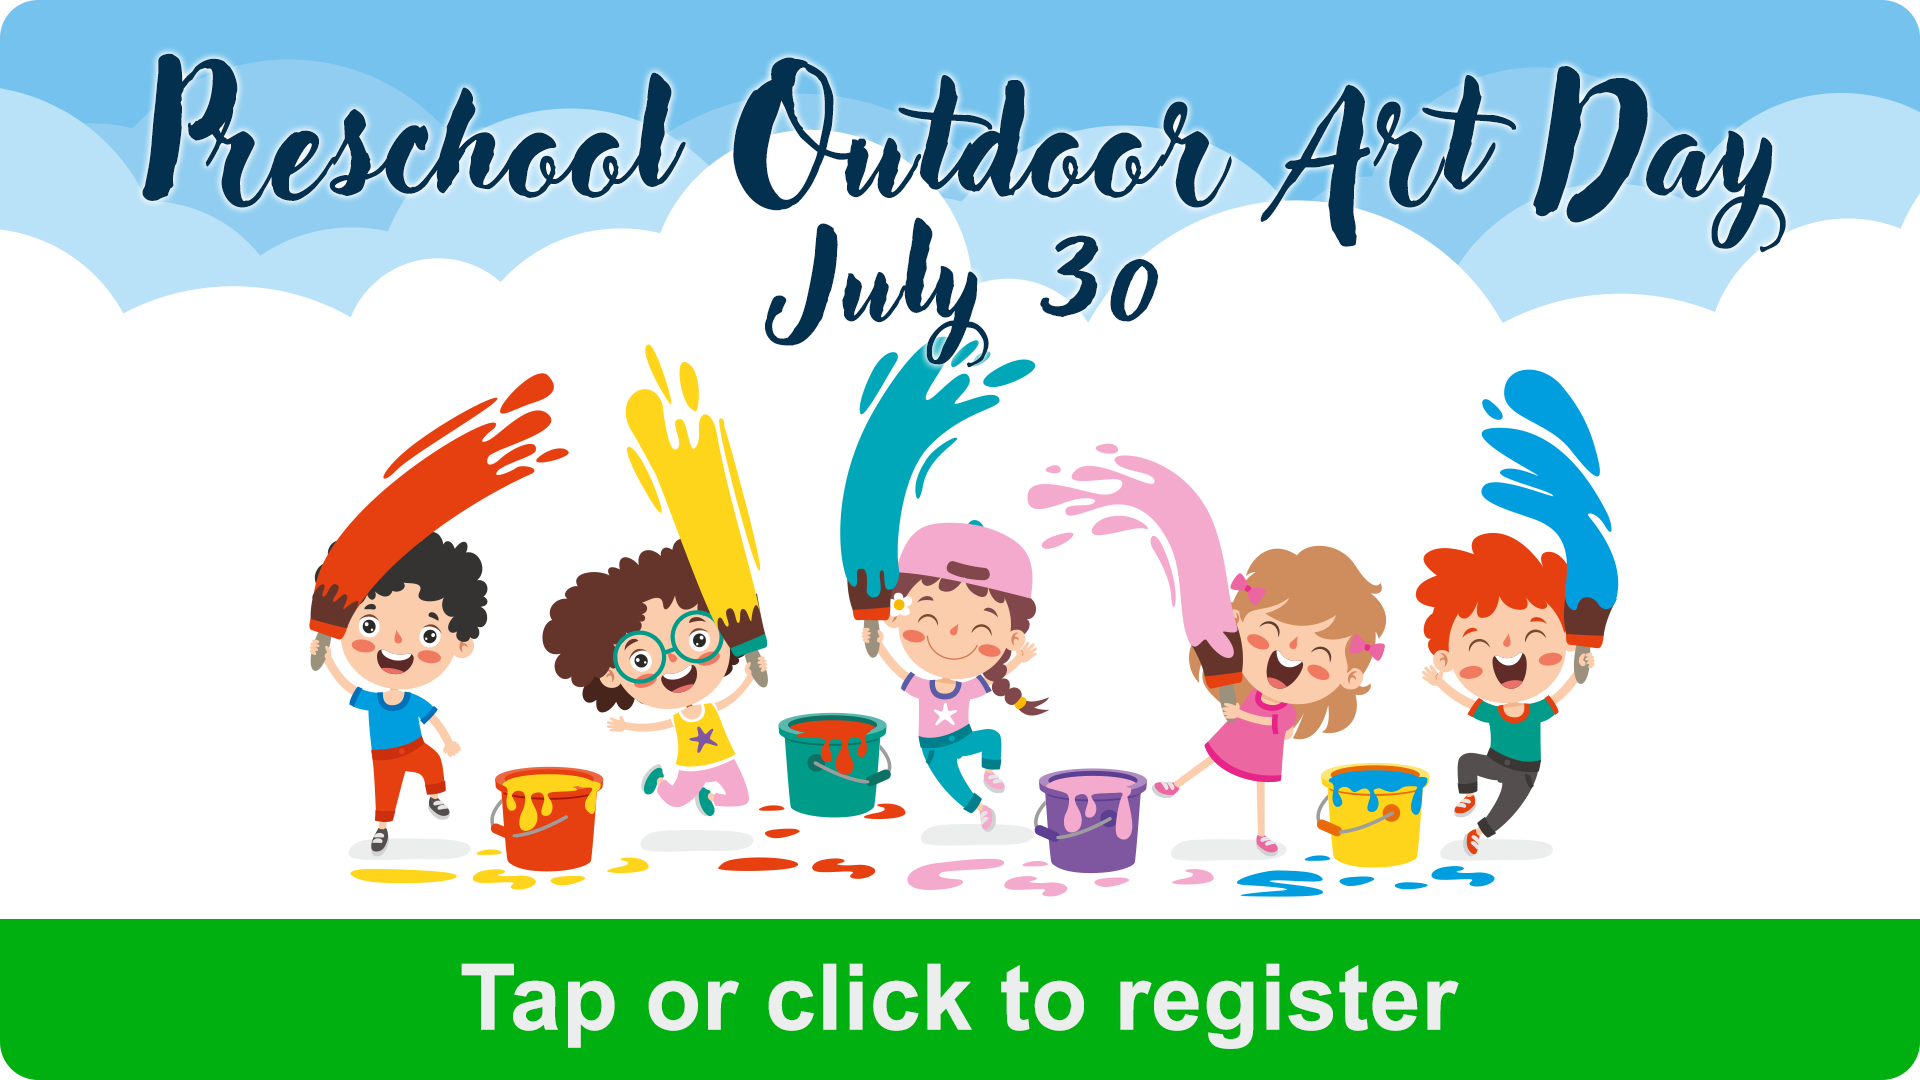 Preschool Outdoor Art Day Website